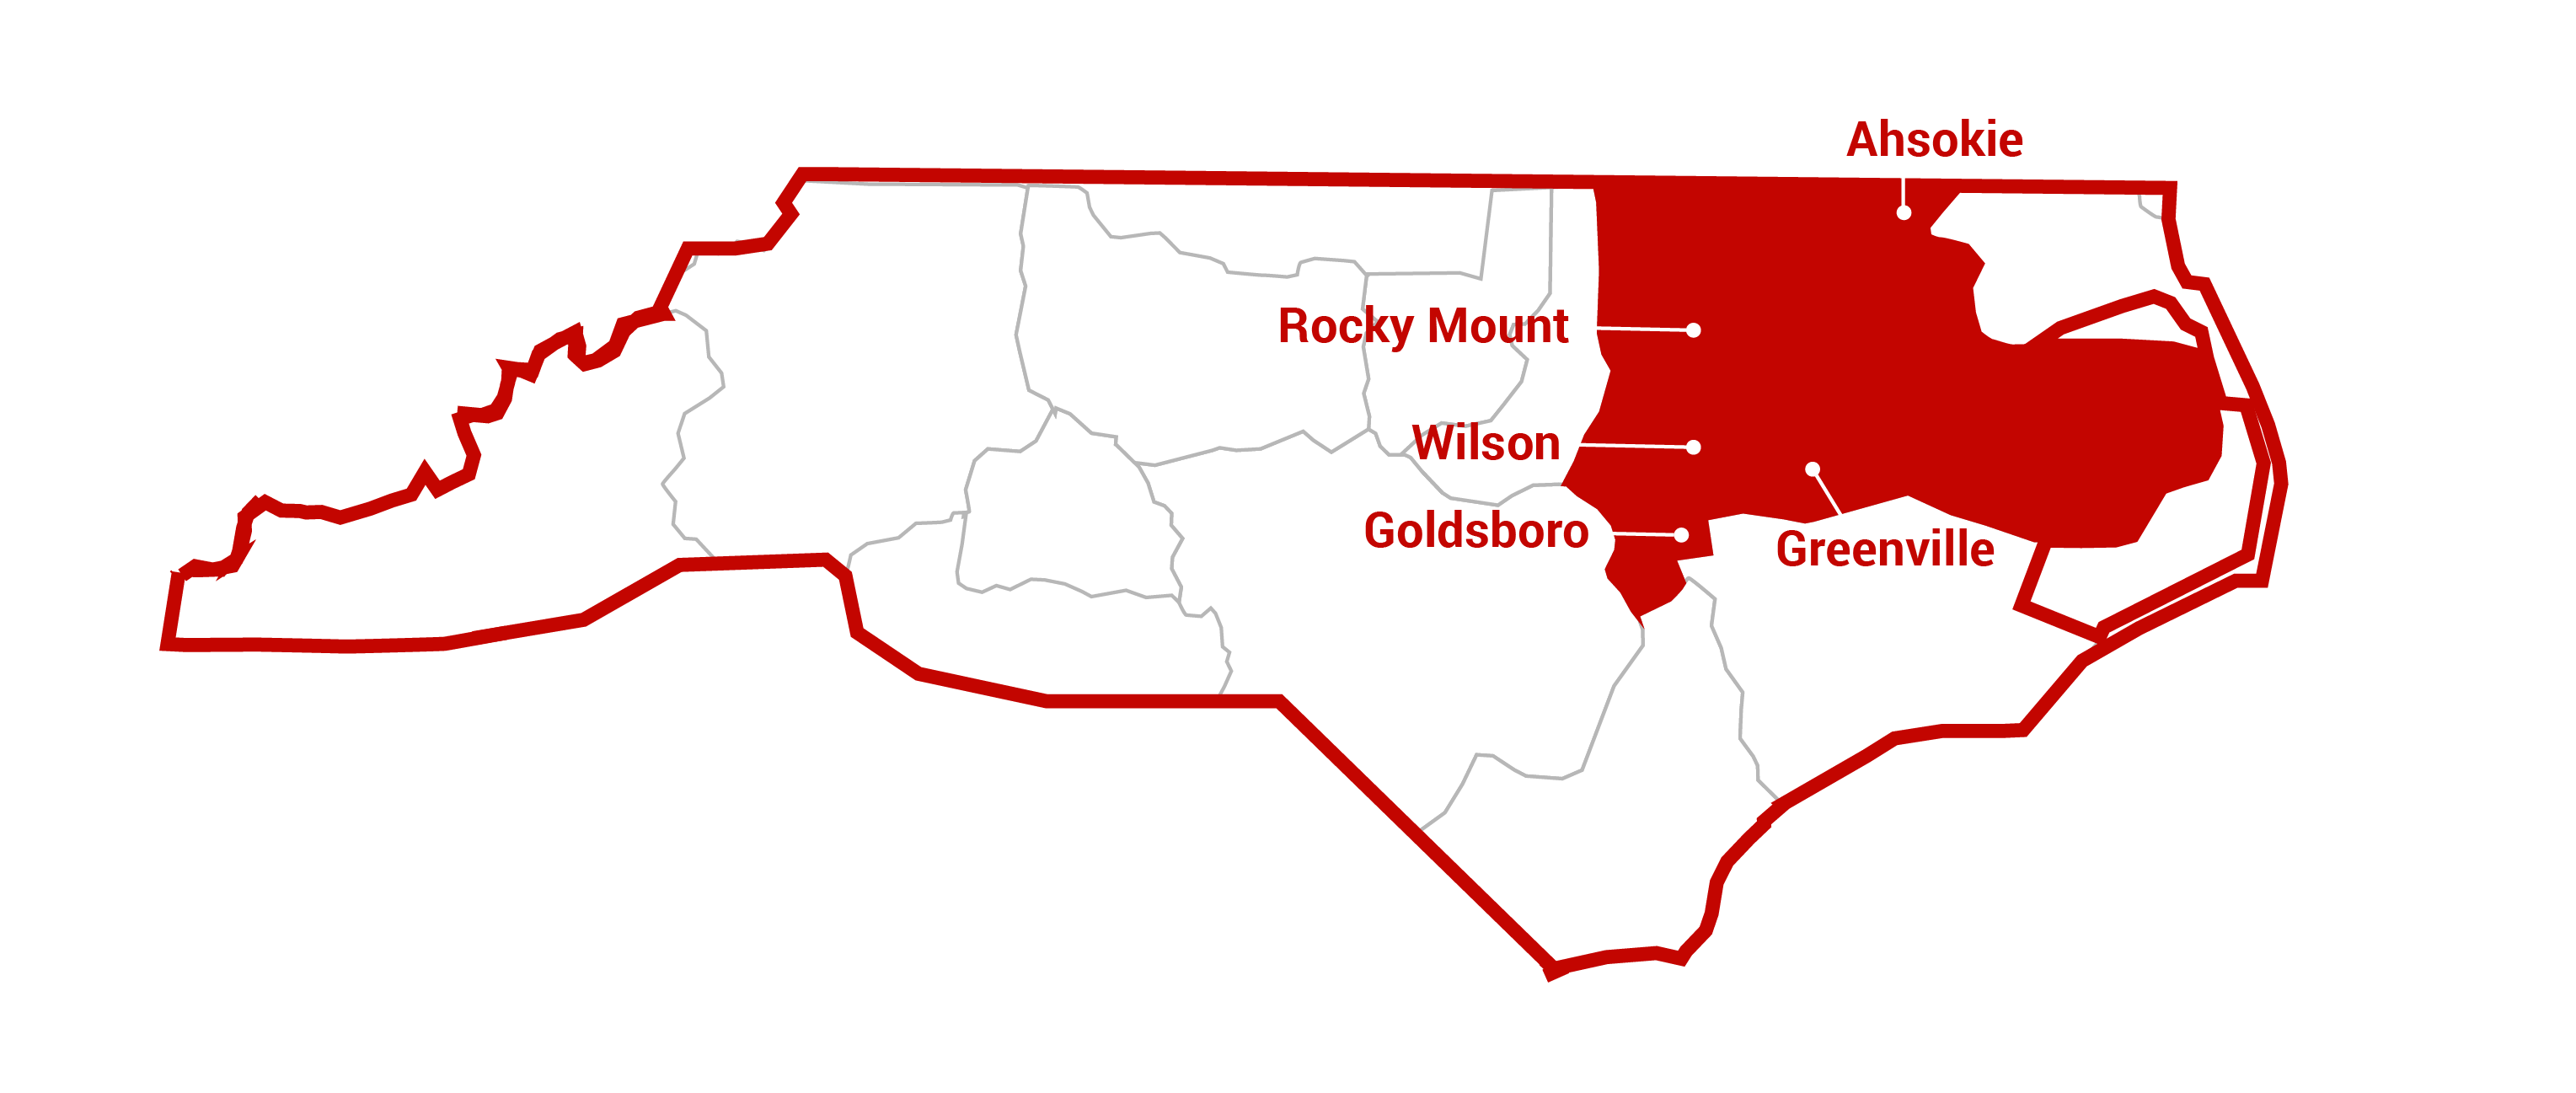 rocky mount area service map